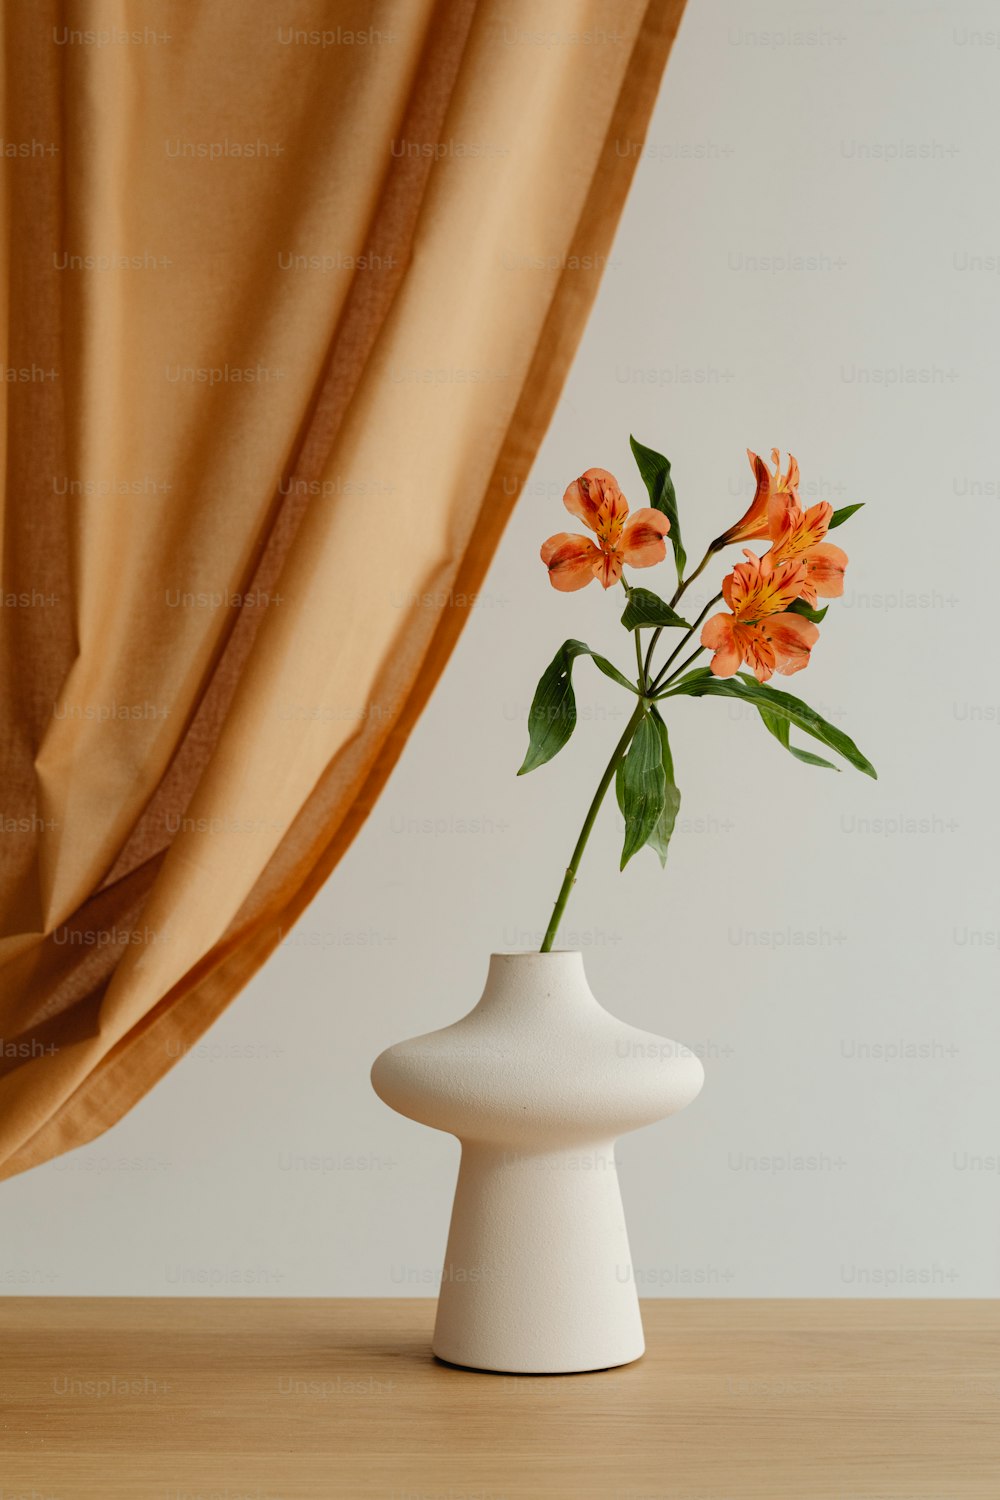 オレンジ色の花が入った白い花瓶